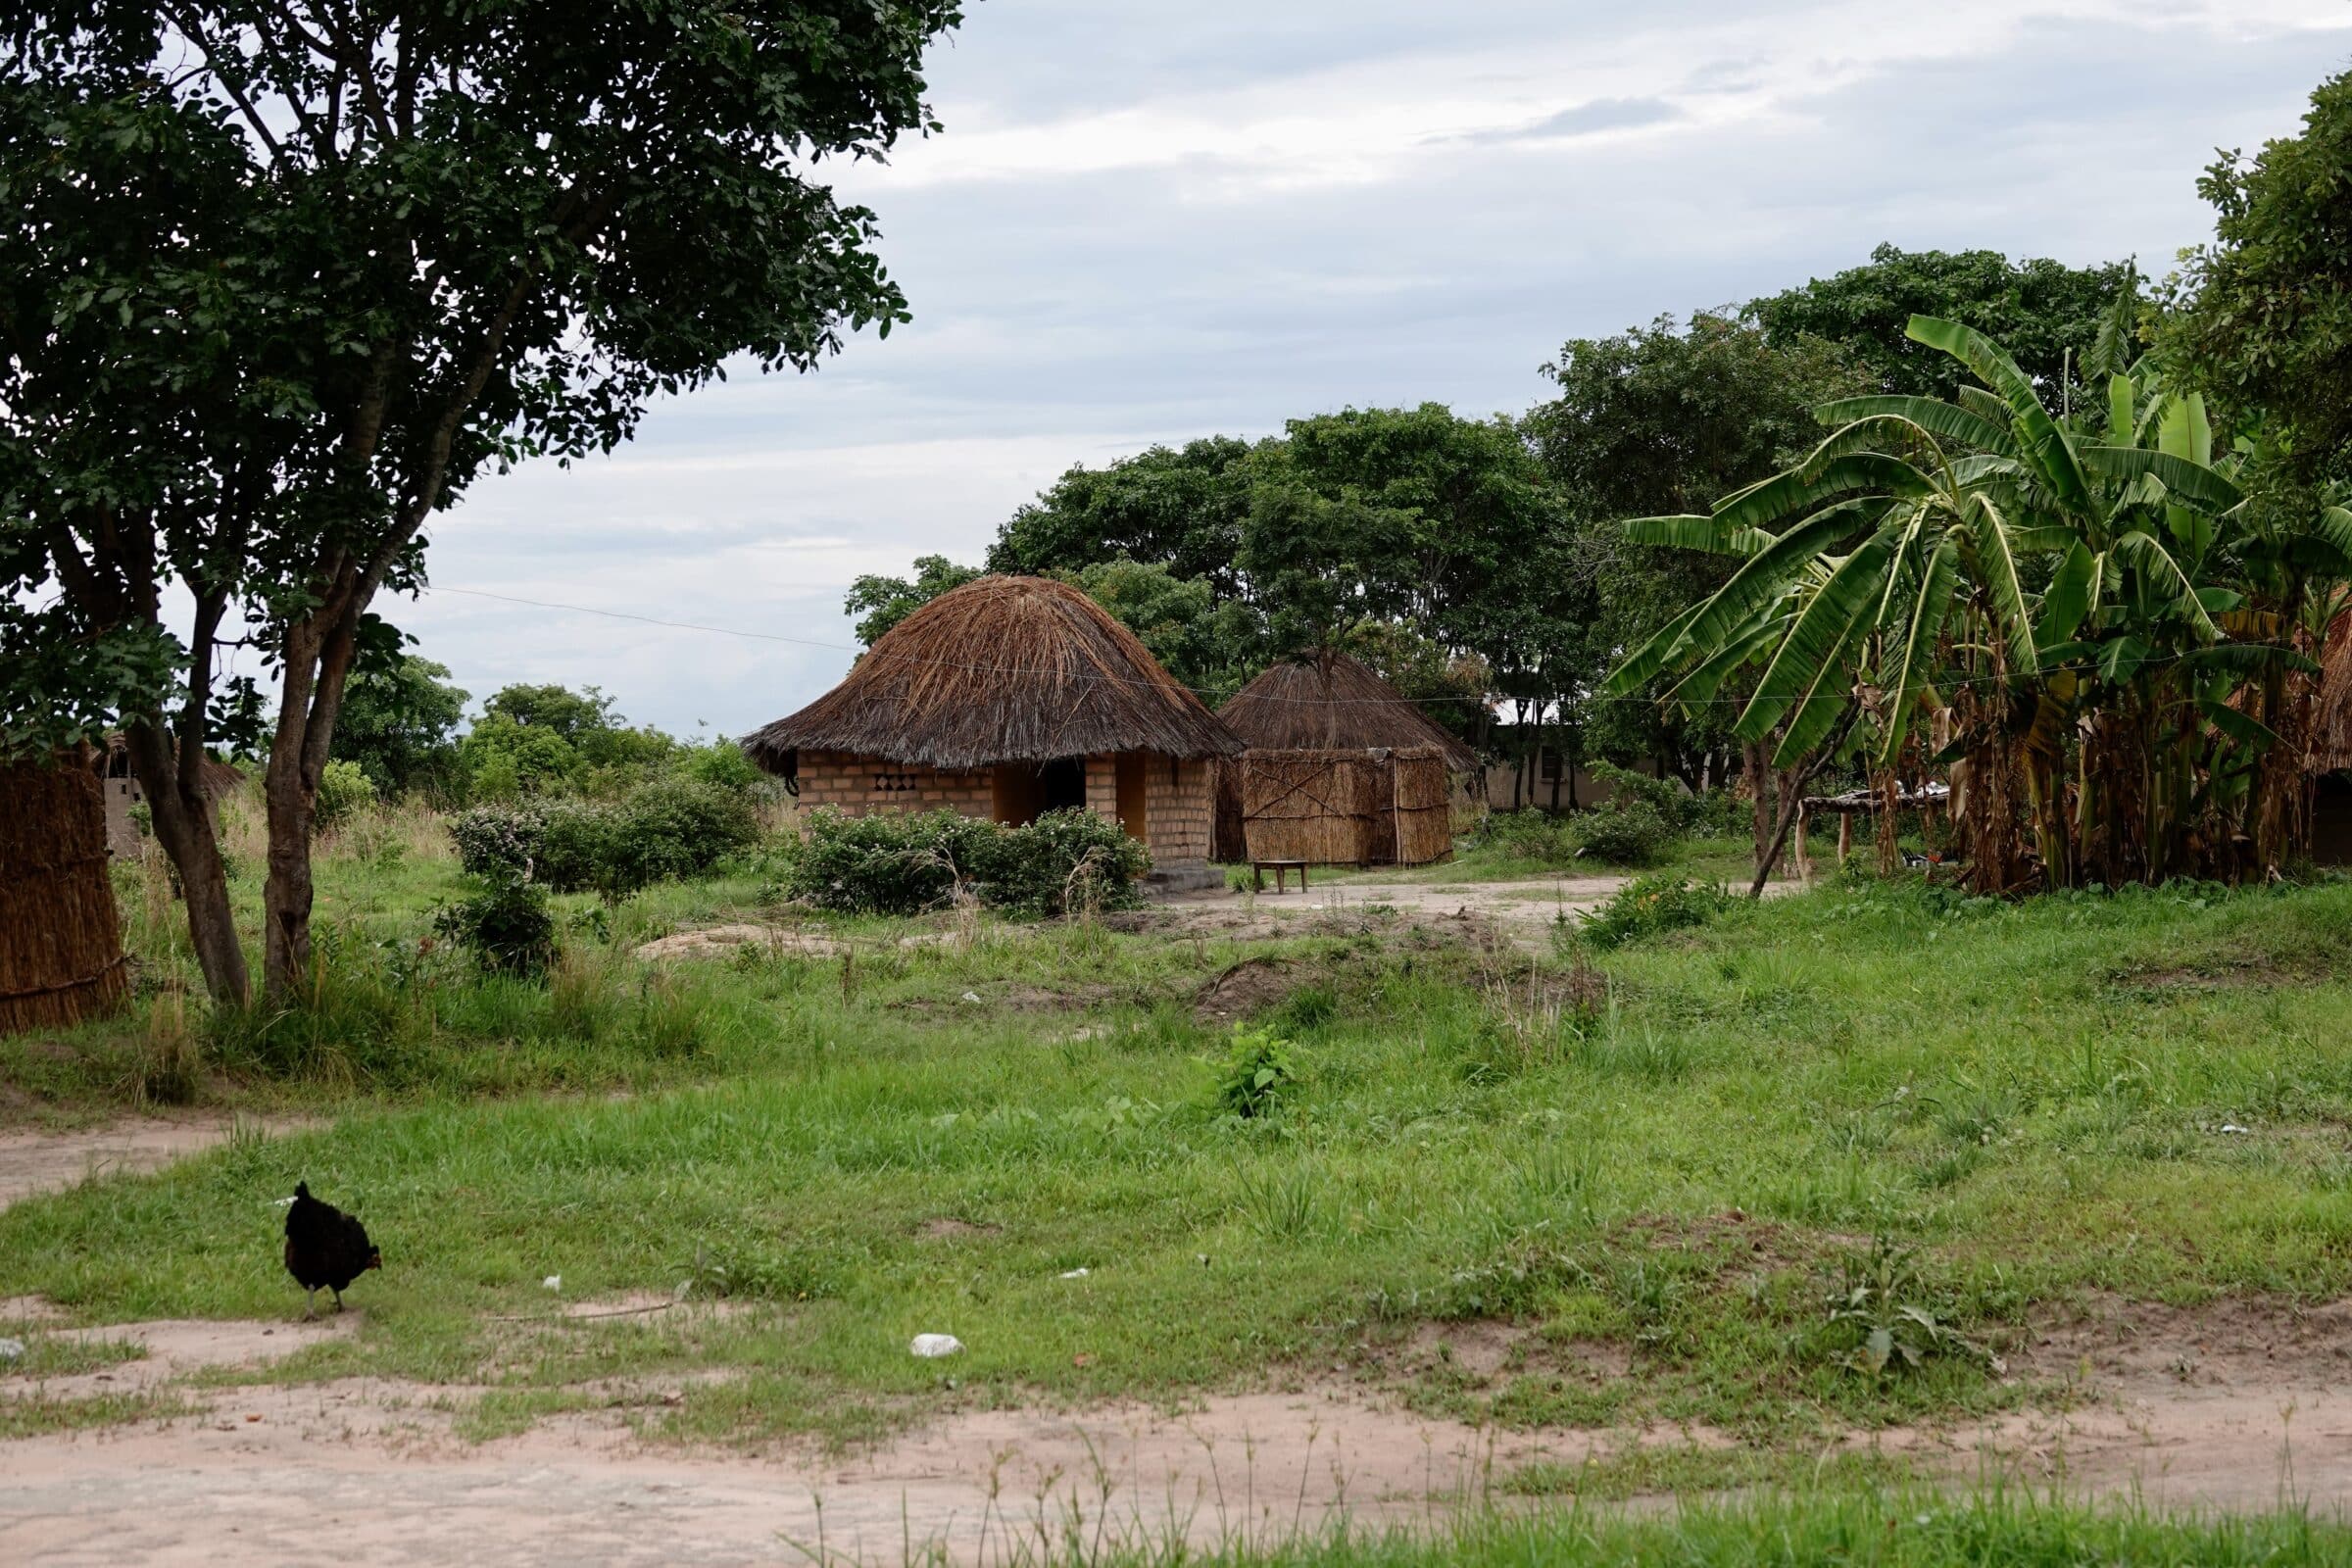 Byutsikt | Överlandning i Zambia